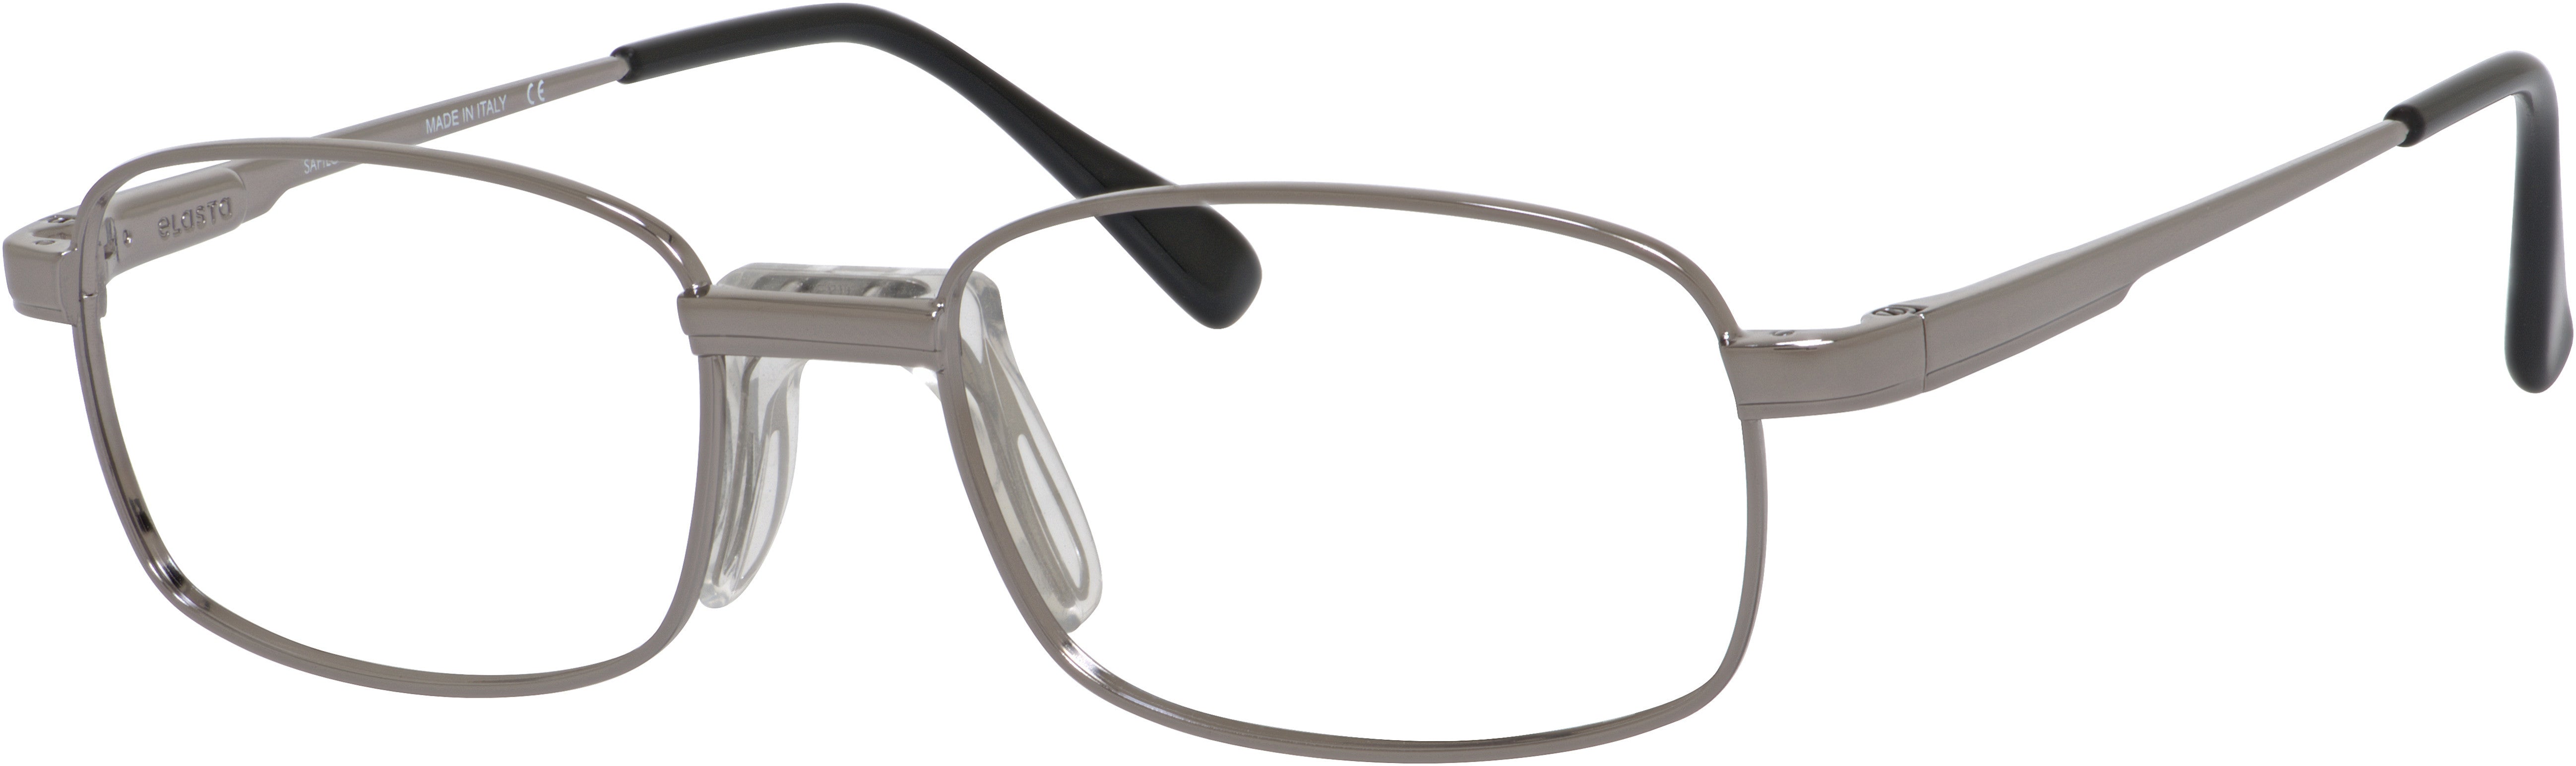  Elasta 7162 Rectangular Eyeglasses 0DF8-0DF8  Ruthenium (00 Demo Lens)